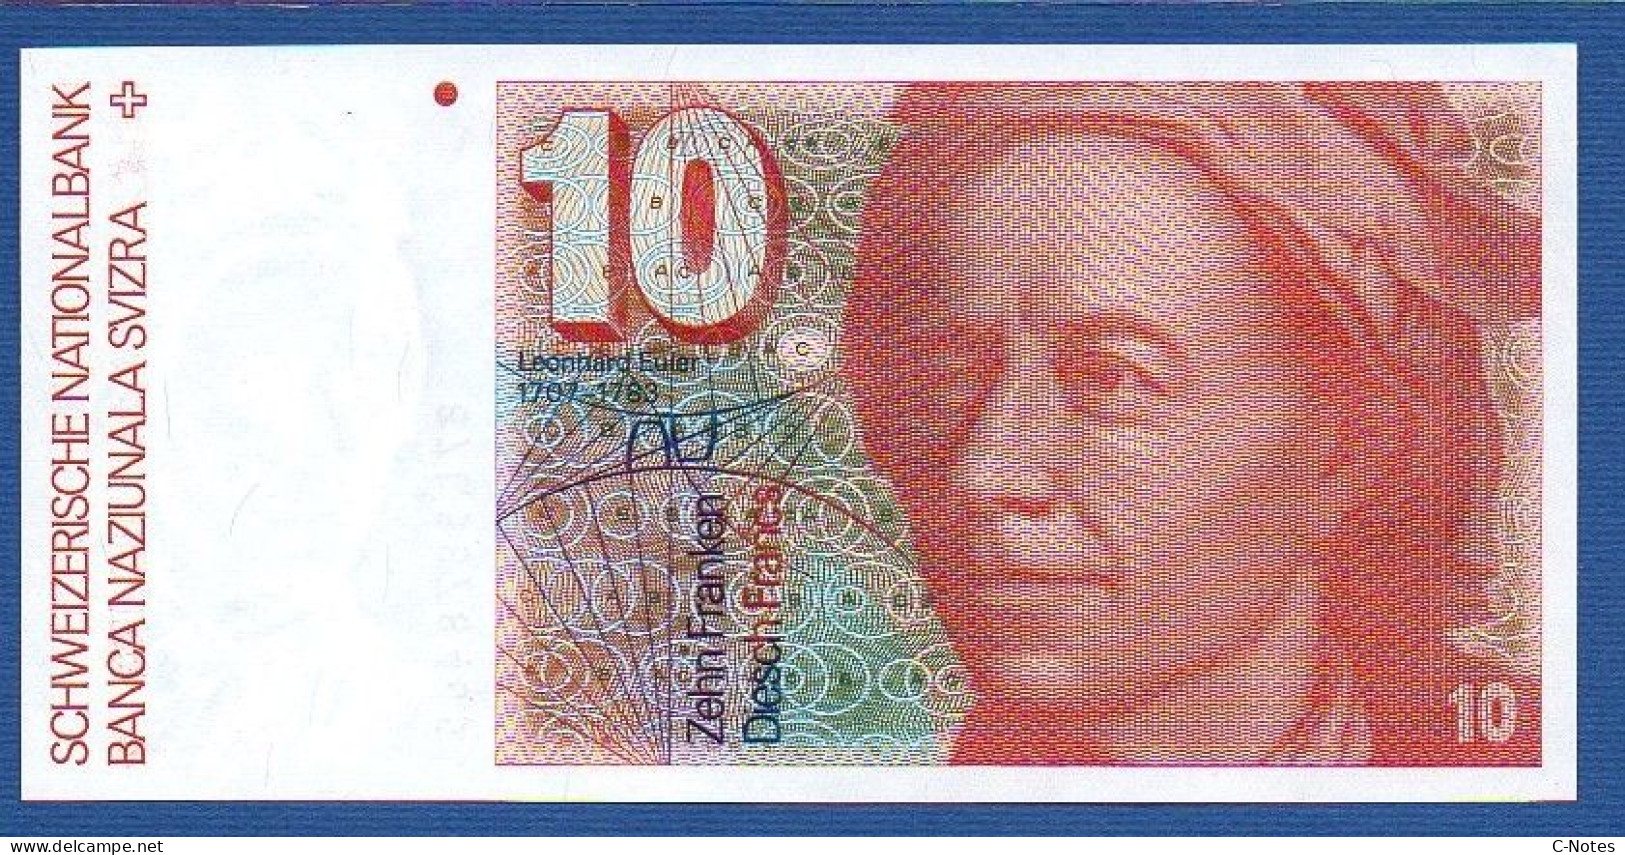 SWITZERLAND - P.53g(3) - 10 Francs 1987 UNC, Serie 87L5878465   -signatures: F. Schaller & Meyer - Schweiz